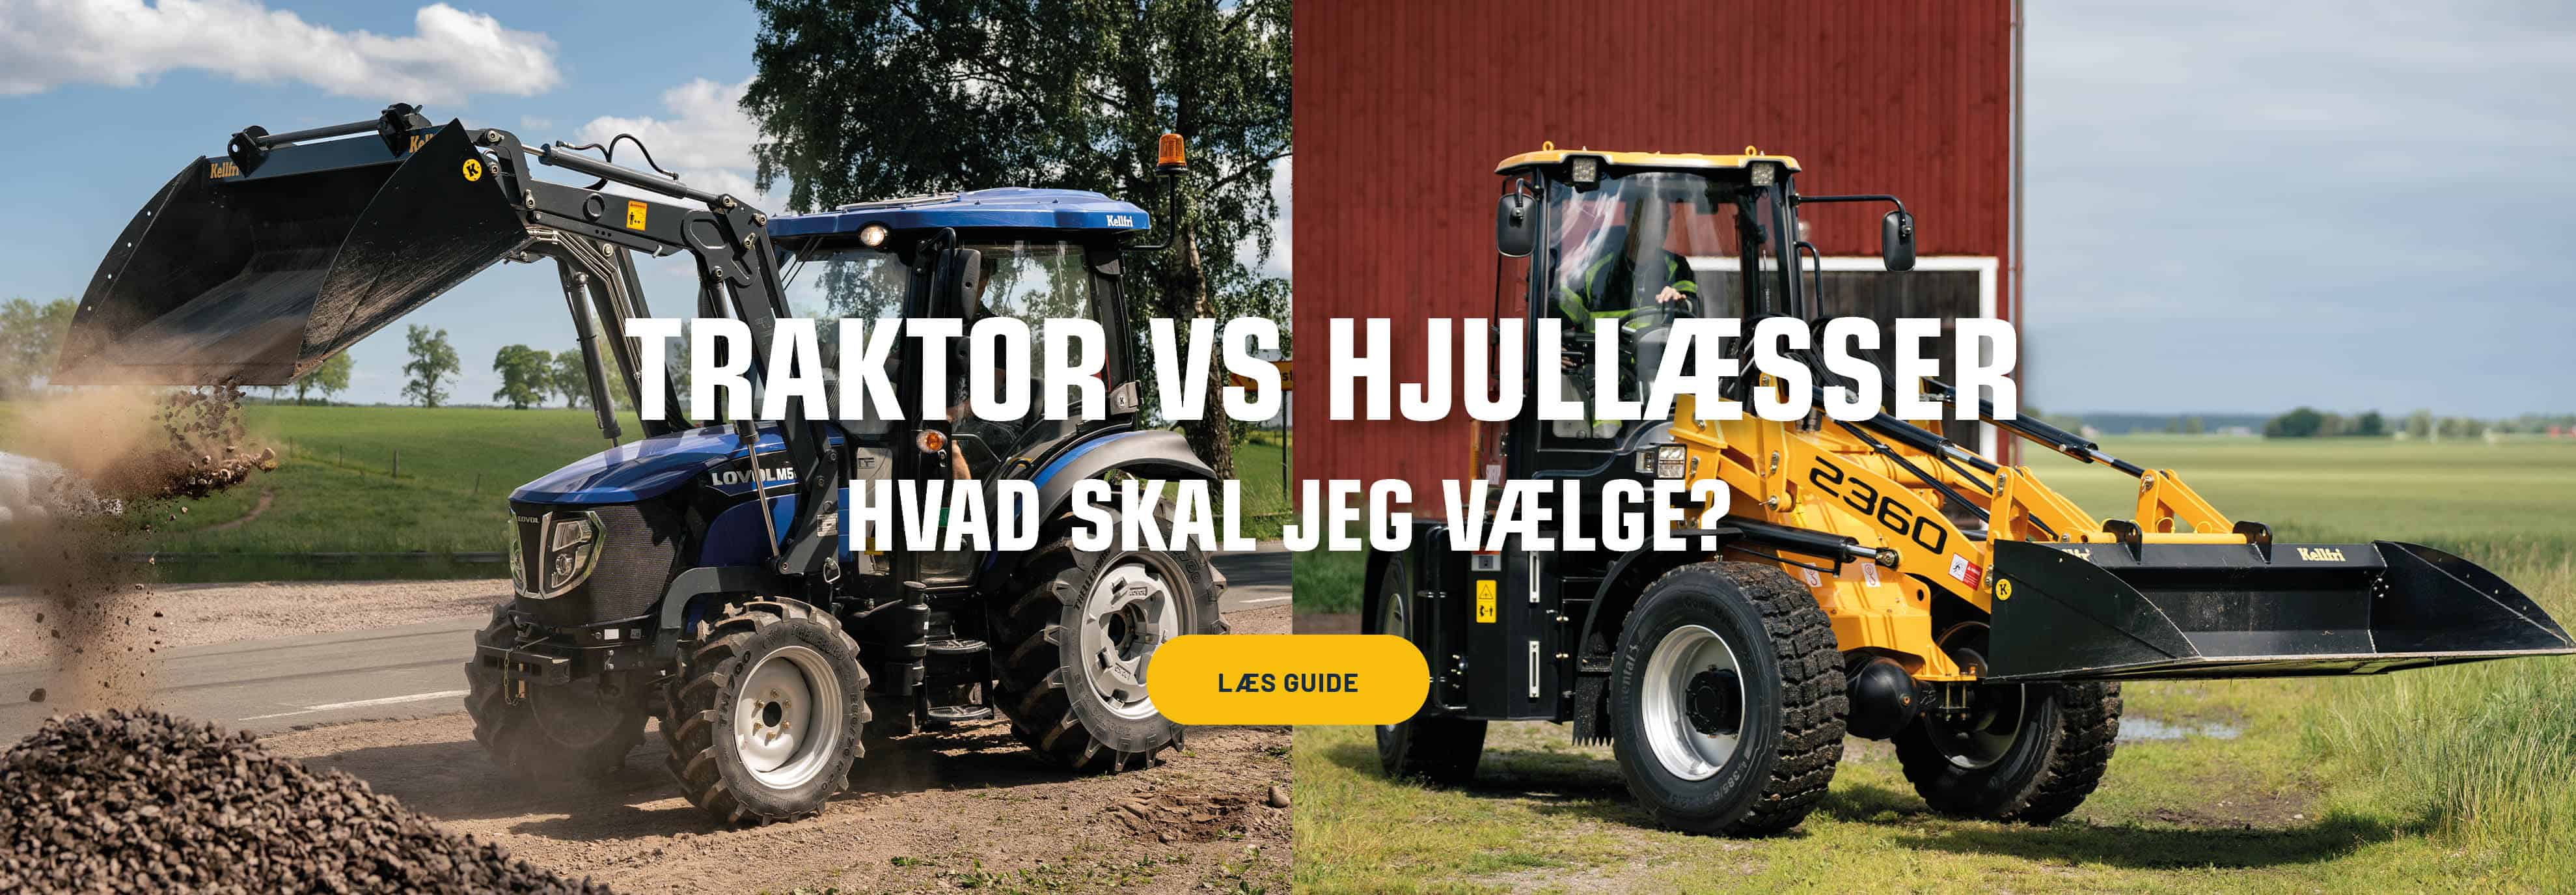 Lovol traktor vs Swekip hjullastare 1900x660 DK.jpg